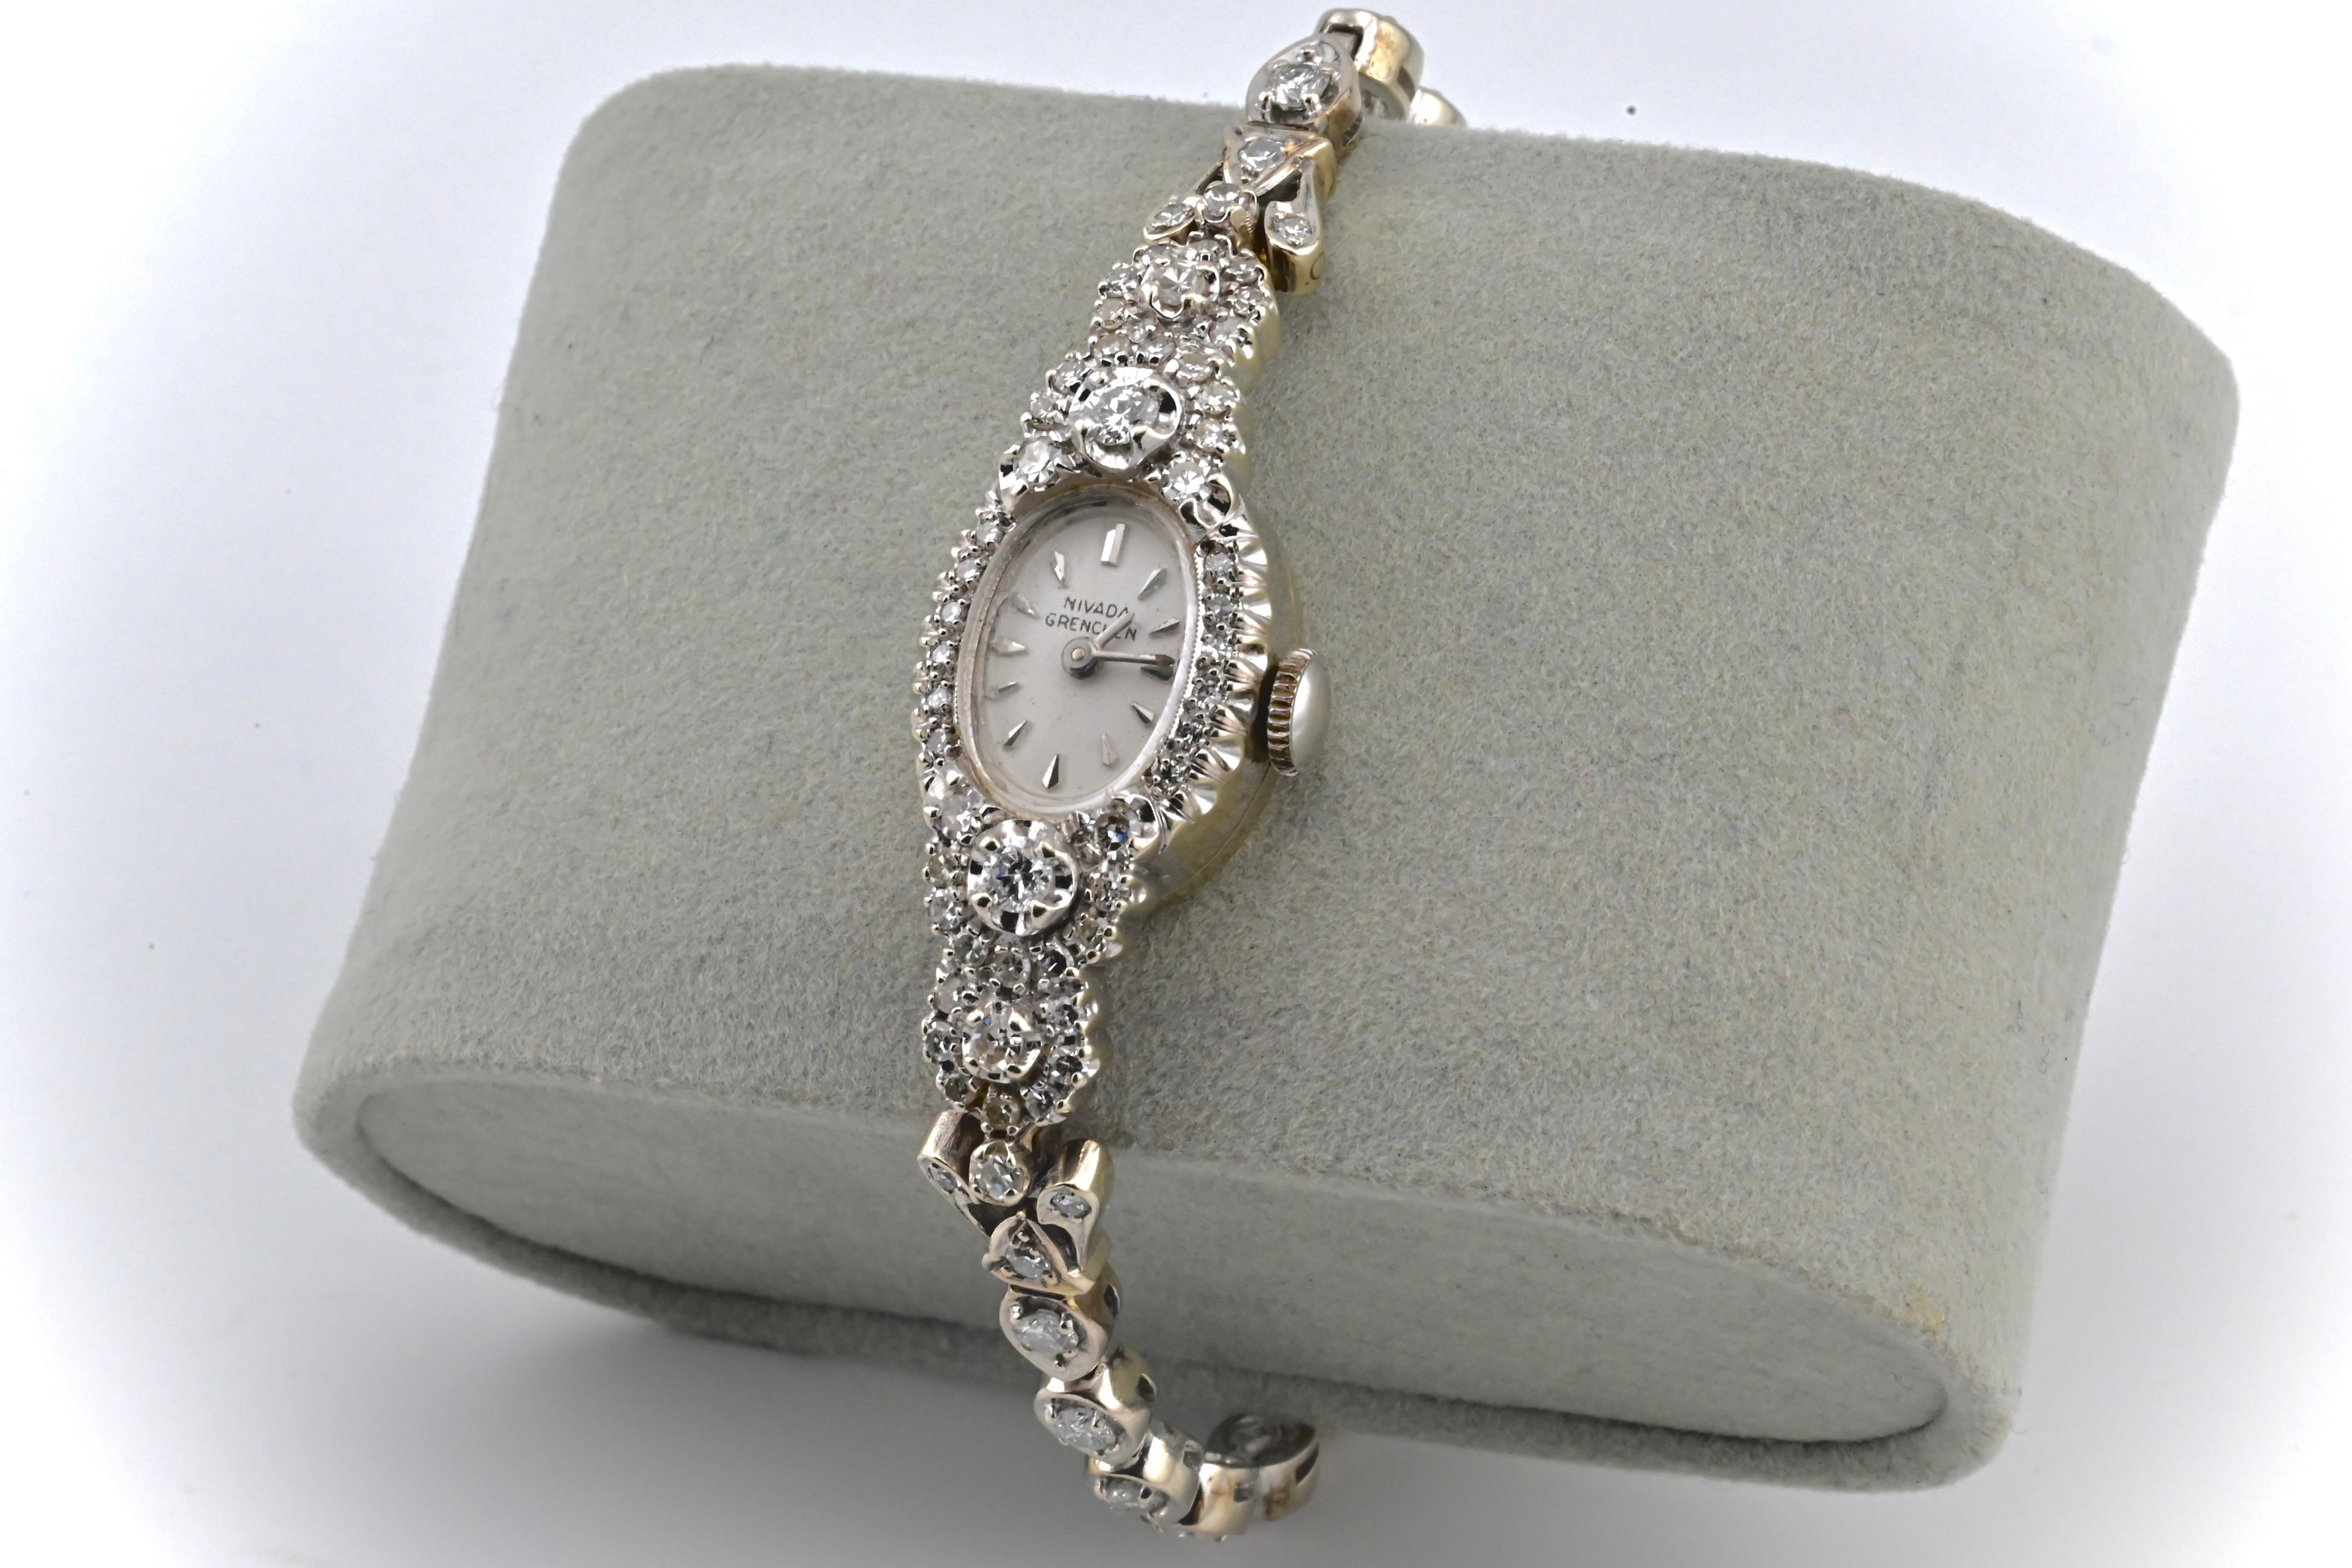 Dies ist eine absolut atemberaubende Nivada Grenchen Damenarmbanduhr mit 14k Weißgold & Diamanten gemacht. Diese Uhr hat eine wunderschöne, mit Diamanten besetzte Lünette und hochwertige Diamanten im Rundschliff, die über das Armband der Uhr laufen.